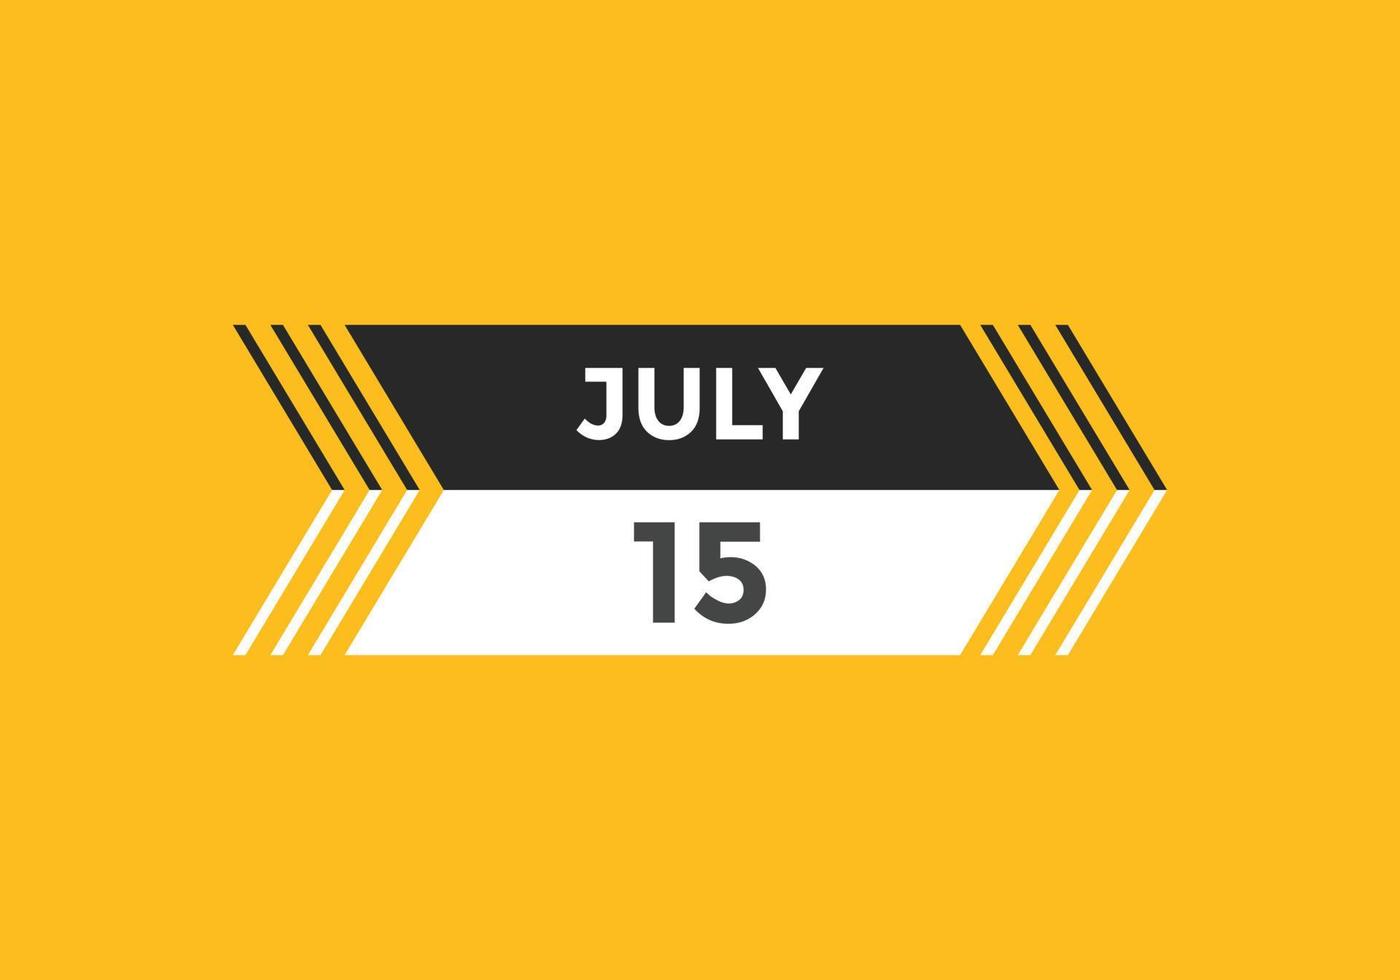 juli 15 kalender herinnering. 15e juli dagelijks kalender icoon sjabloon. kalender 15e juli icoon ontwerp sjabloon. vector illustratie